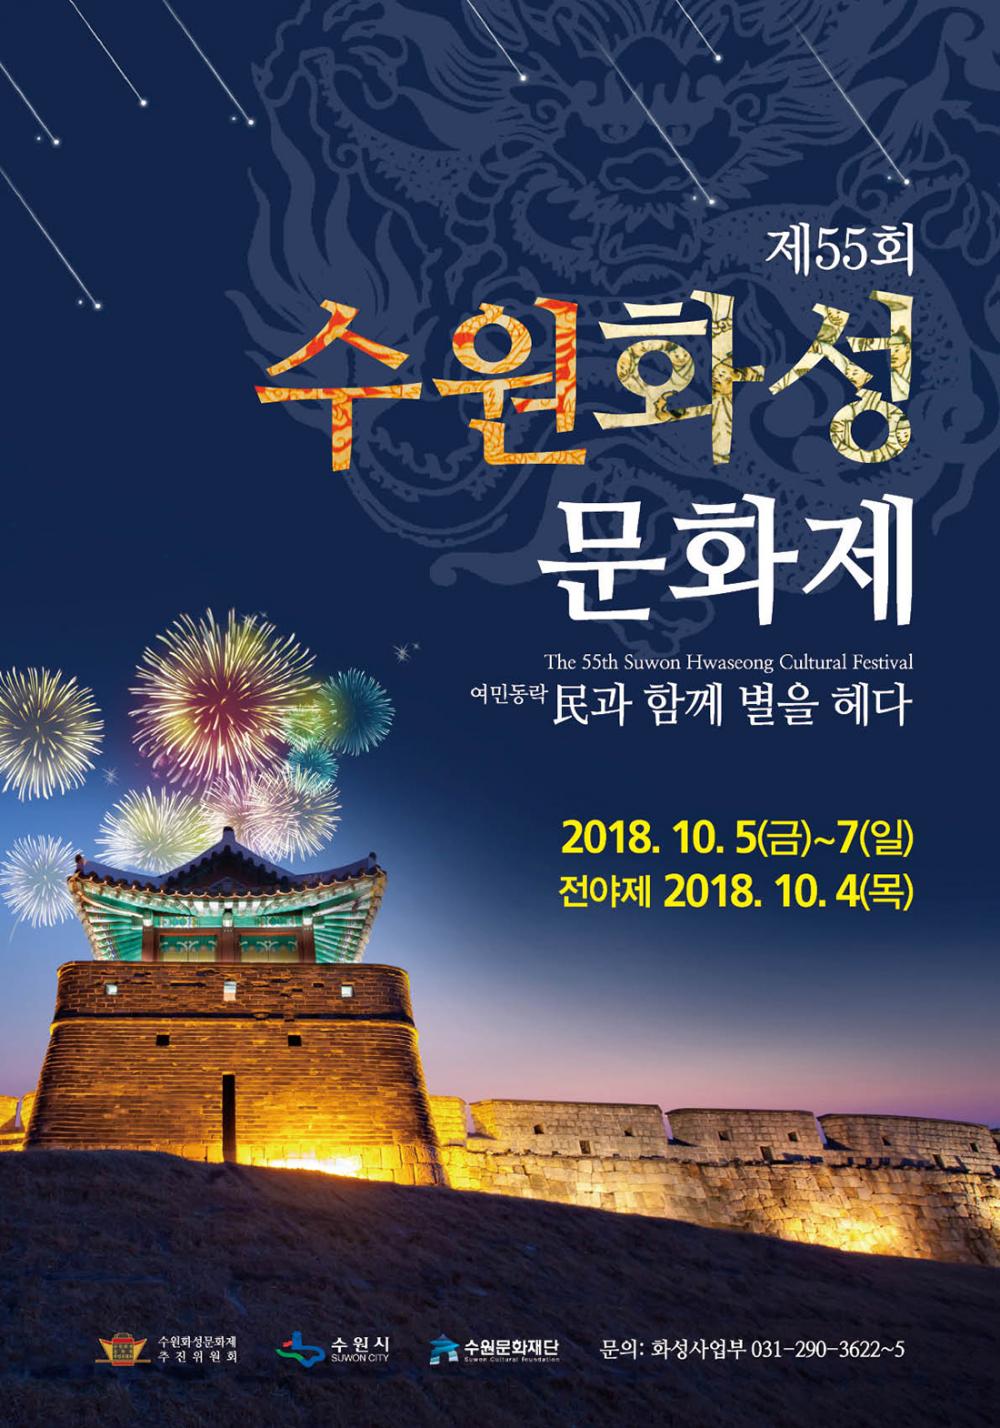 제55회 수원화성문화제 the 55th suwon hwaseong cultural festival 여민동락 민과 함께 별을 헤다 2018년 10월 5일(금) ~ 7일(일) 전야제 10월 4일(목) 수원화성문화제 추진위원회 수원시 수원문화재단 문의 화성사업부 031-290-3622~5